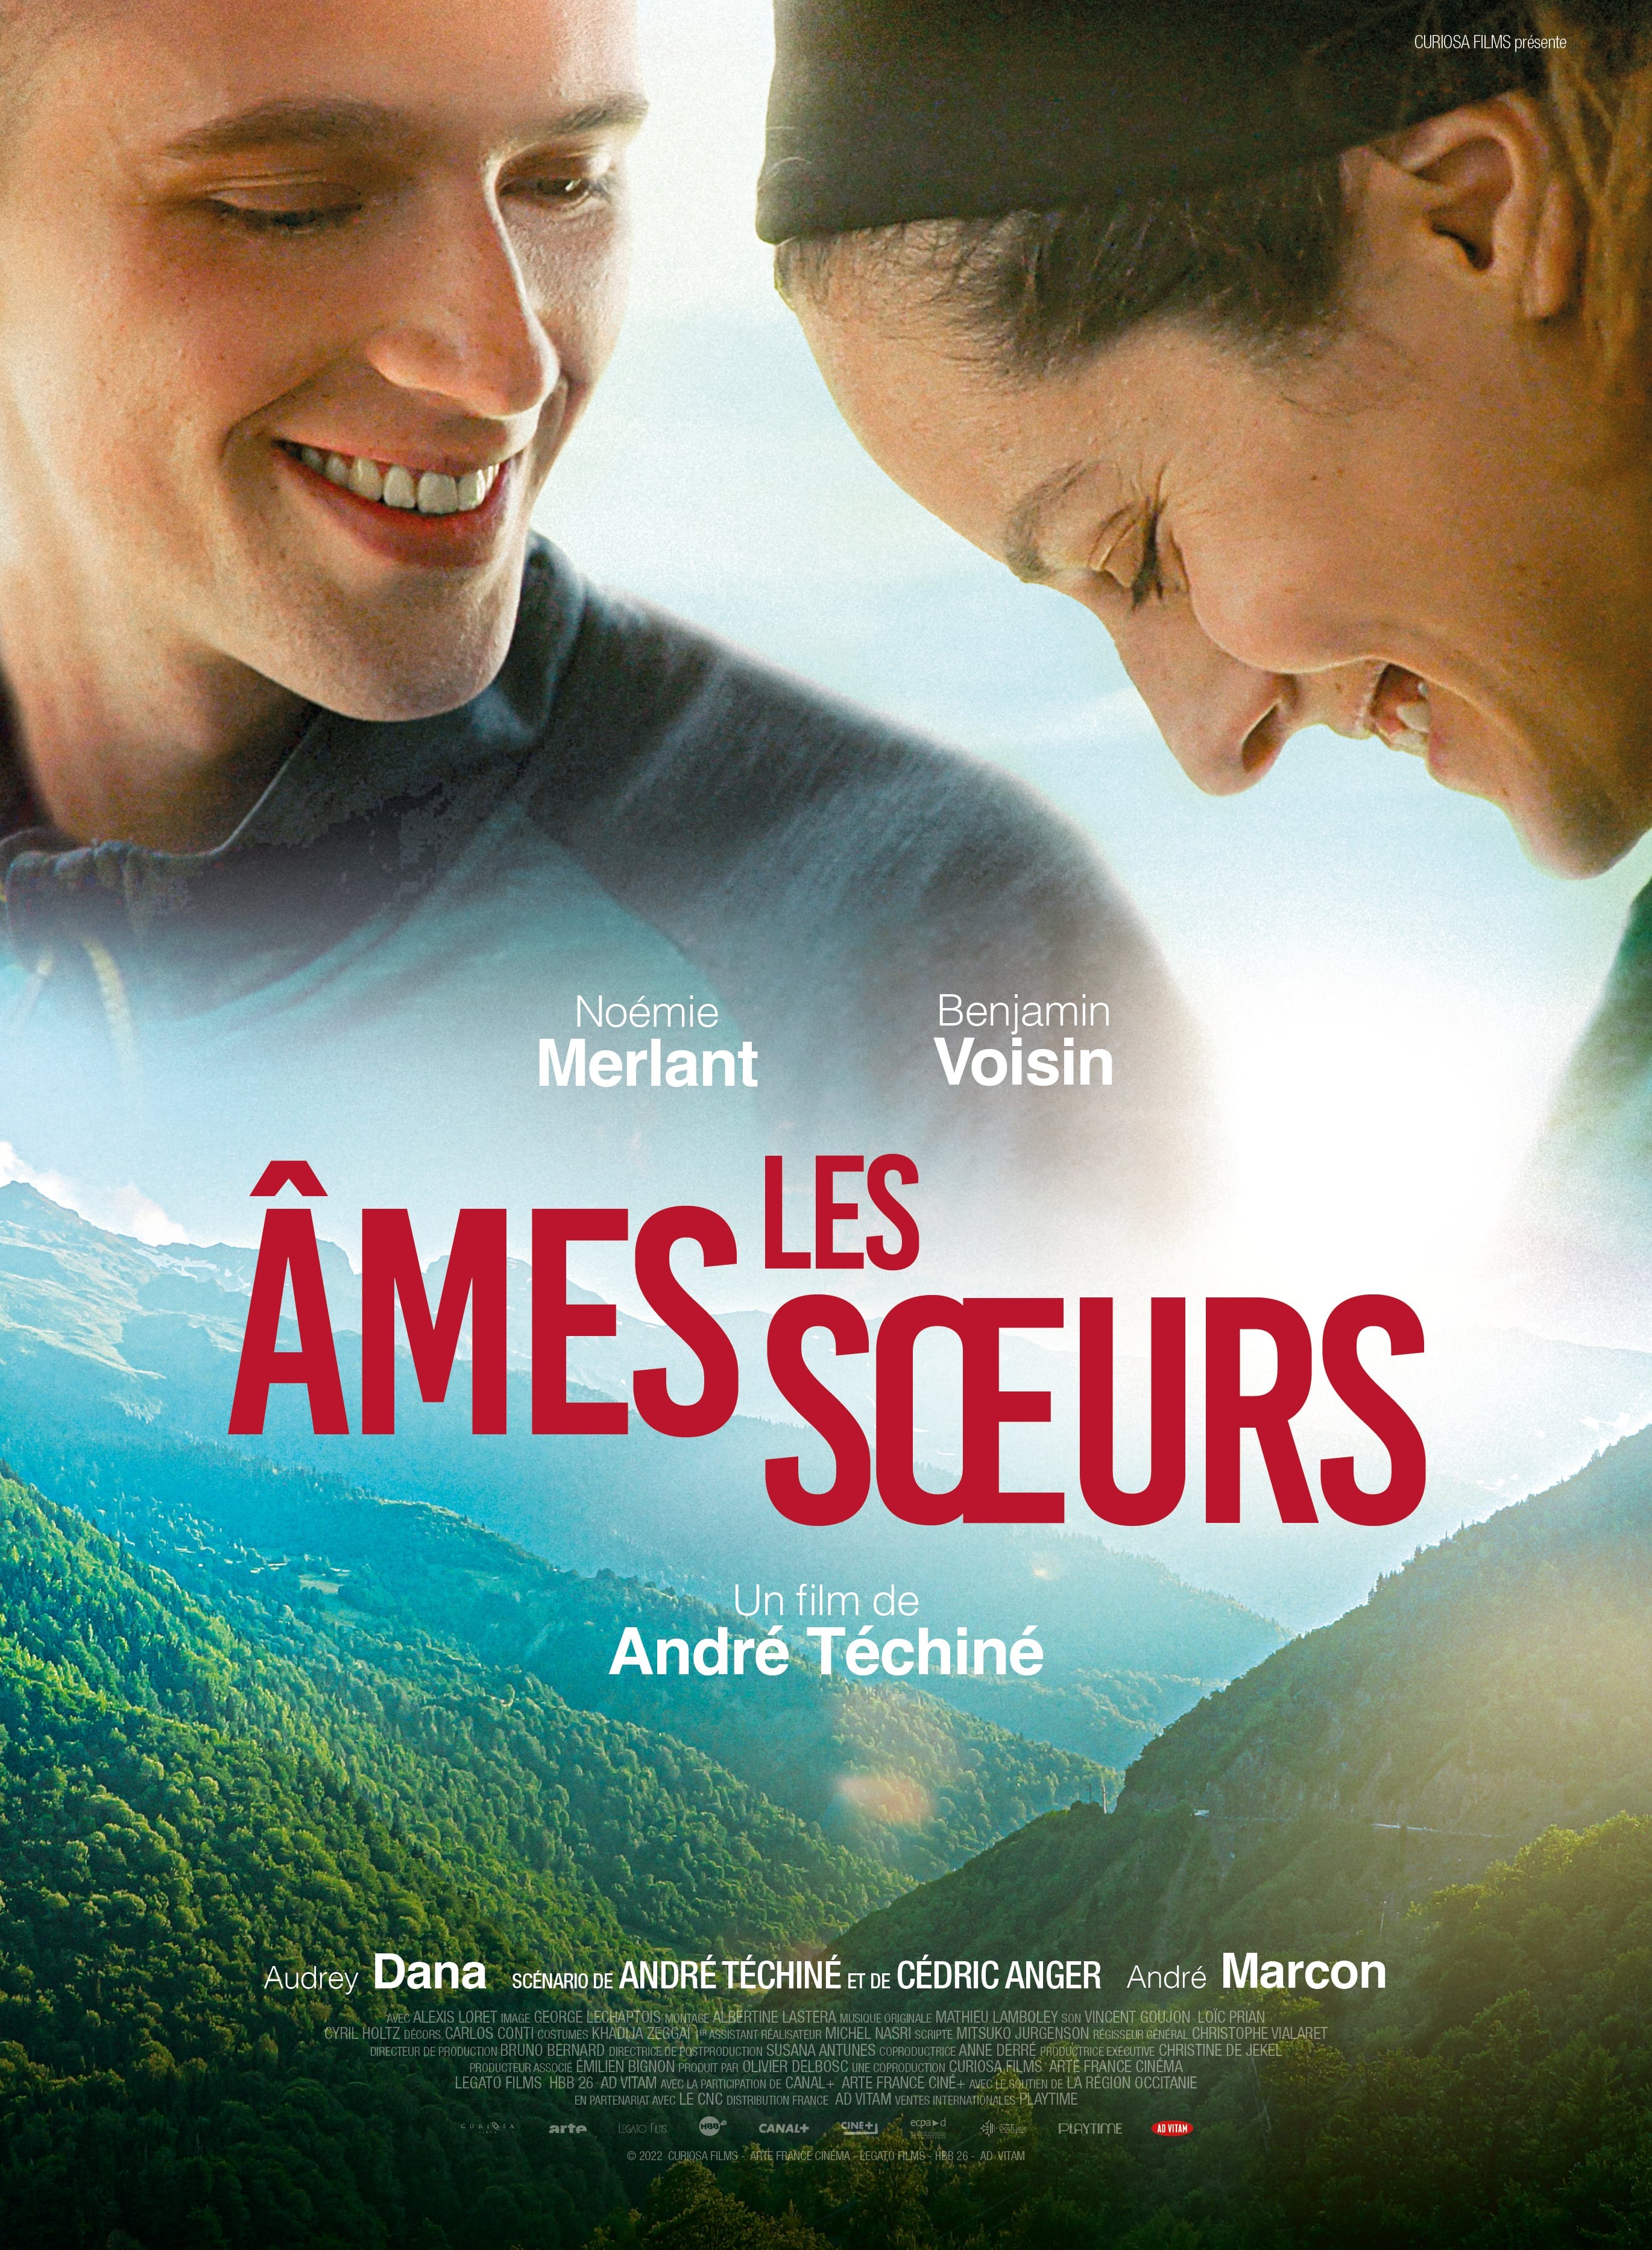 Les Ames soeurs - Réalisateur André Téchiné